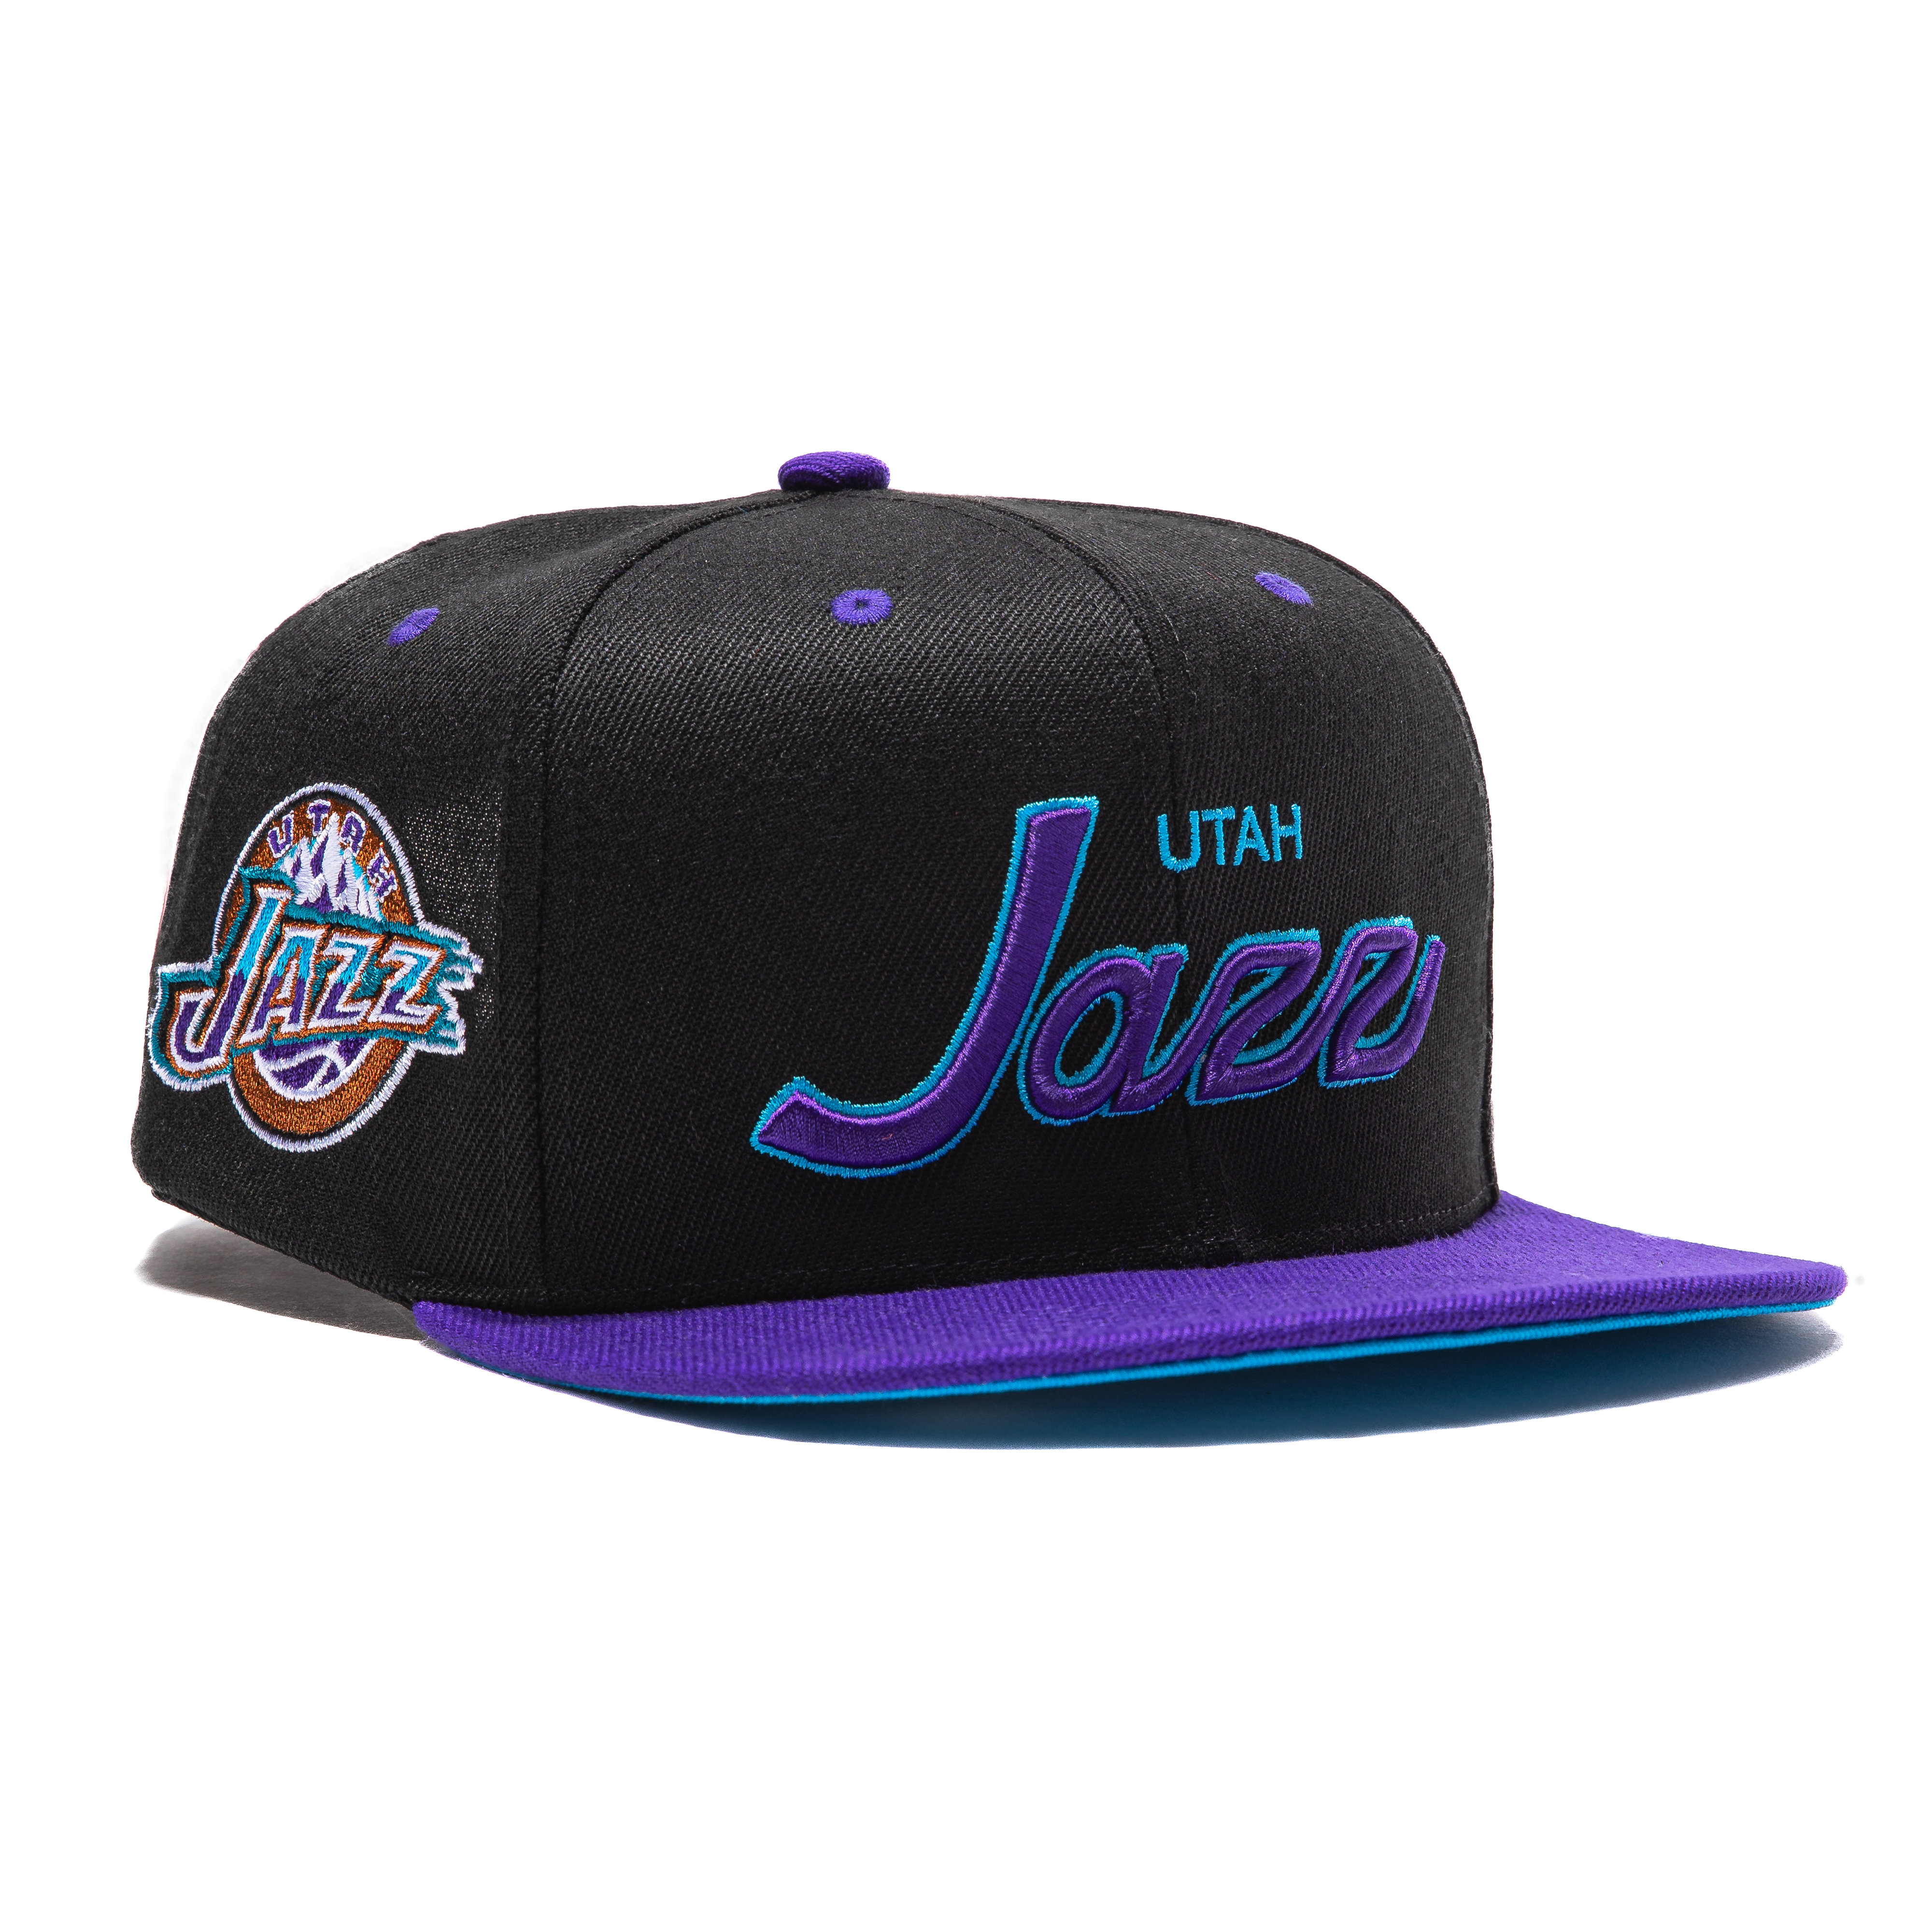 Utah Jazz NBA Mitchell & Ness Hat Snapback Rear Script Light Blue Purple  Cap New